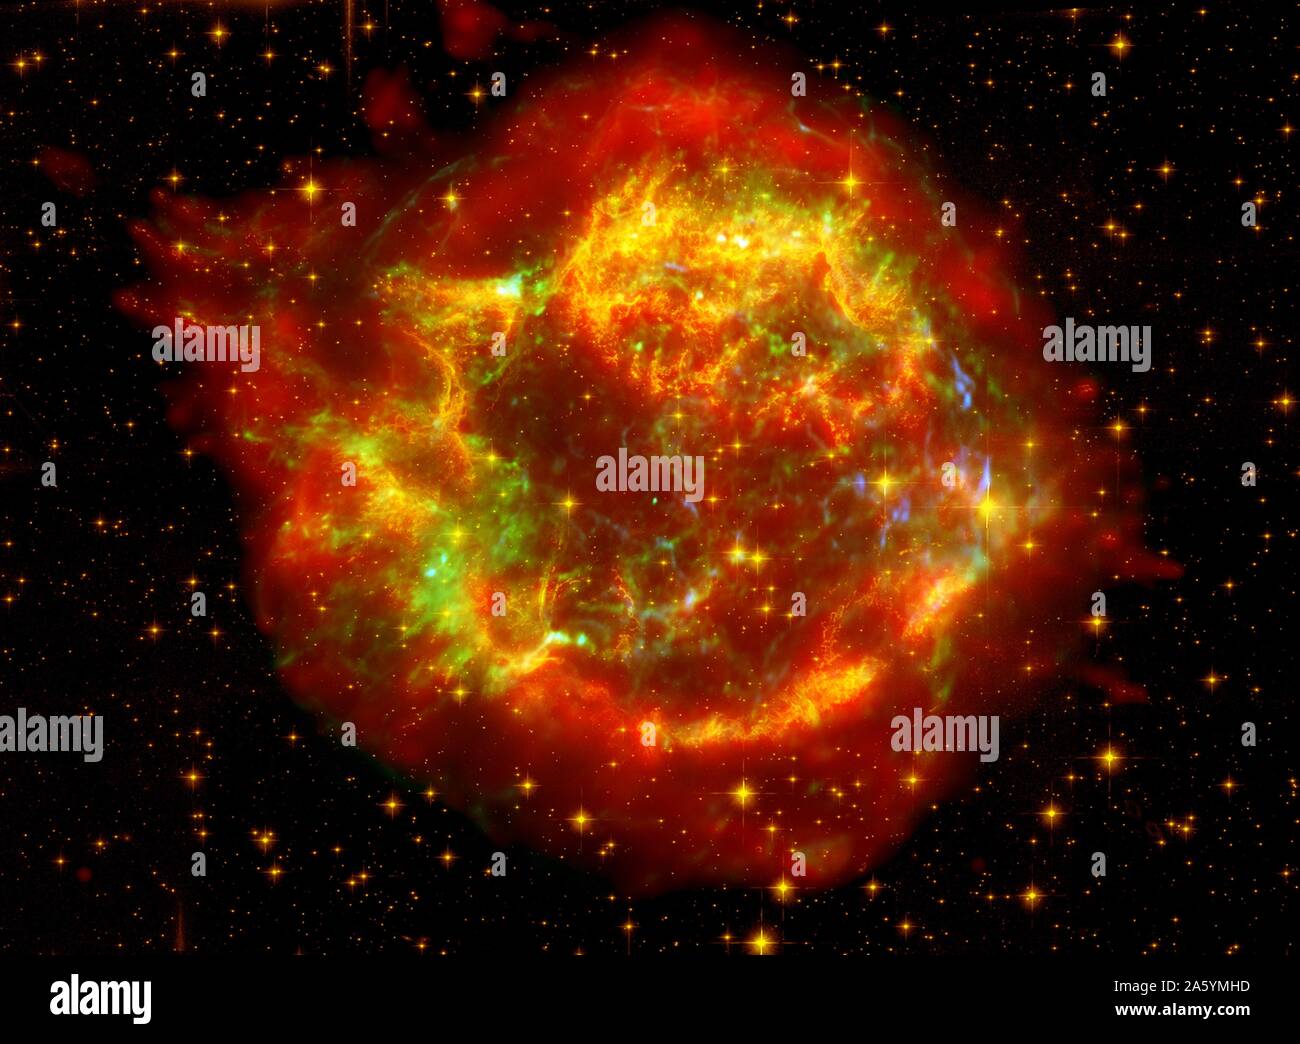 Die vielen Seiten des Supernova-Überrest Cassiopeia A: 10.000 Licht-Jahre entfernt im nördlichen Sternbild Cassiopeia, Cassiopeia A ist der Rest einer einst massiven Stern, der in einer gewalttätigen Supernova Explosion 325 Jahren gestorben. Hubble Space Telescope (HST), Spitzer Space Telescope. Stockfoto